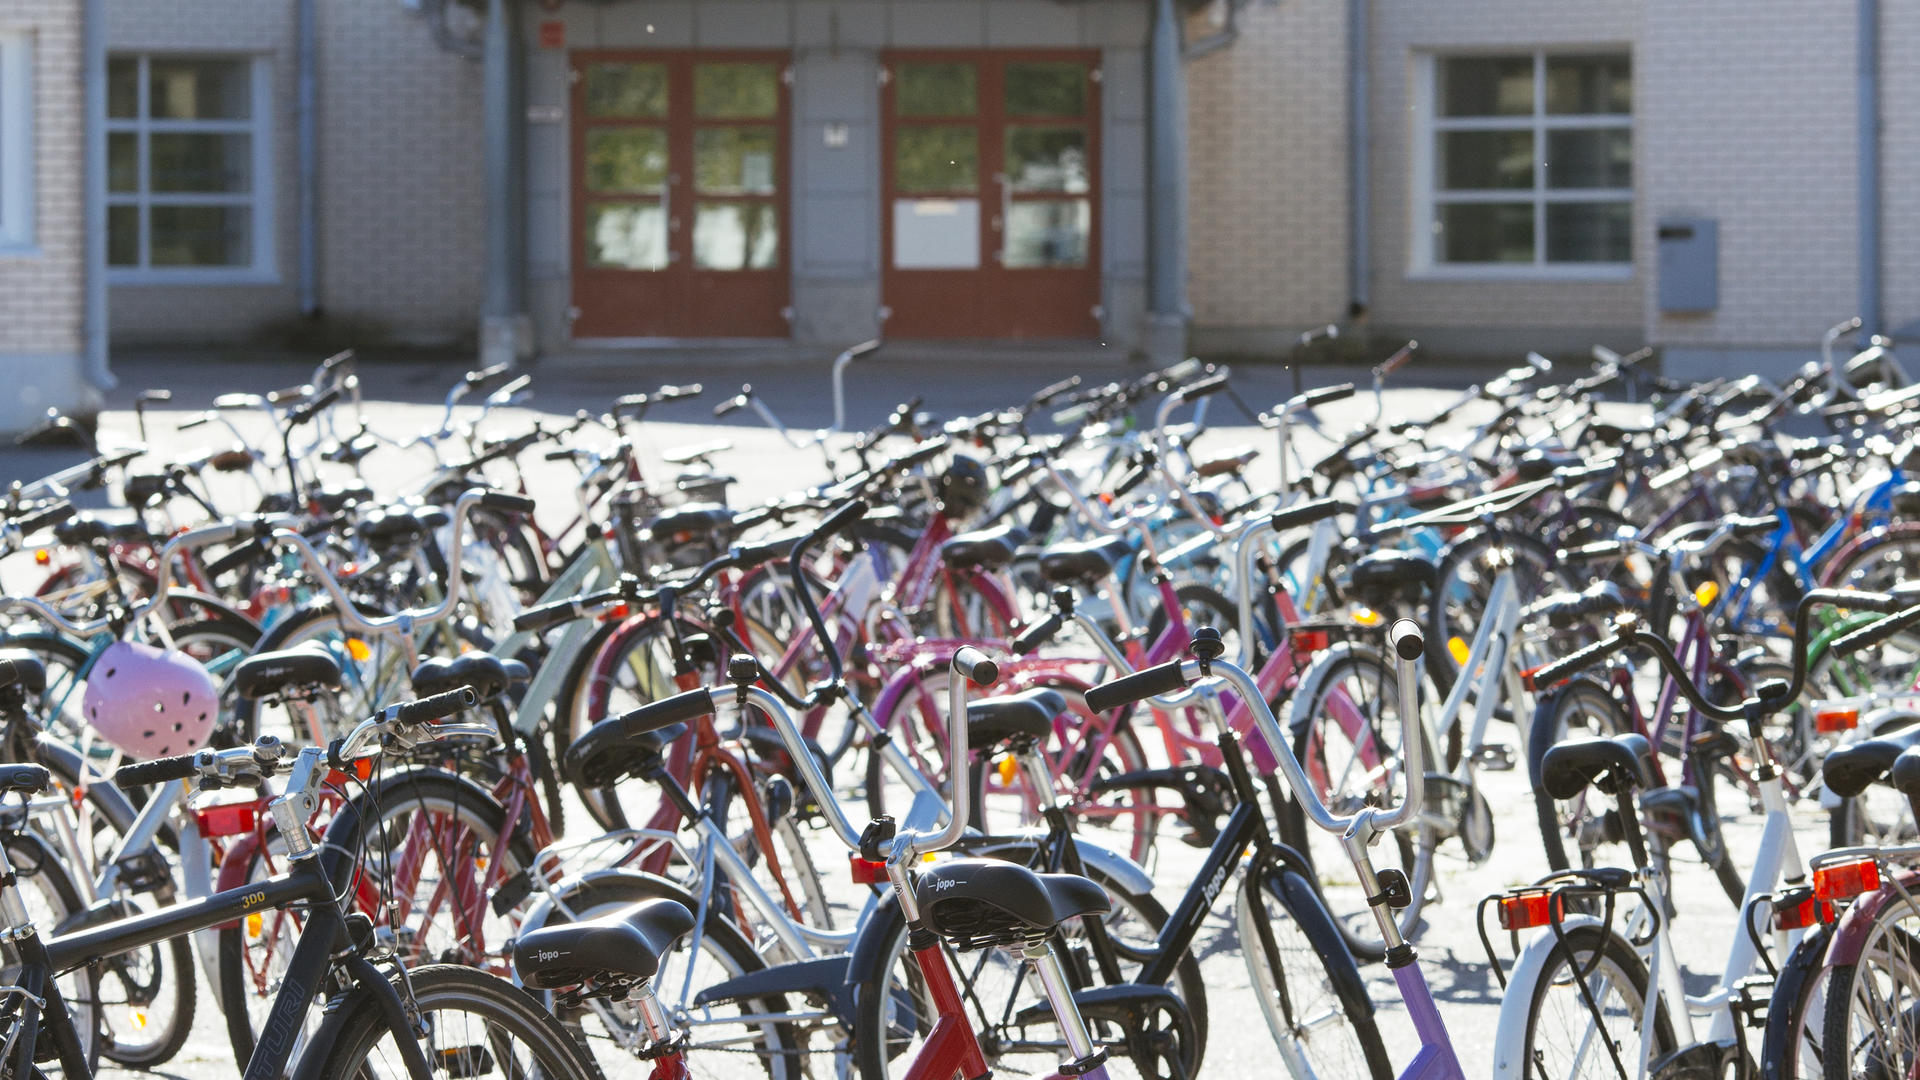 Polkupyöriä Vaisaaren koulun edessä.